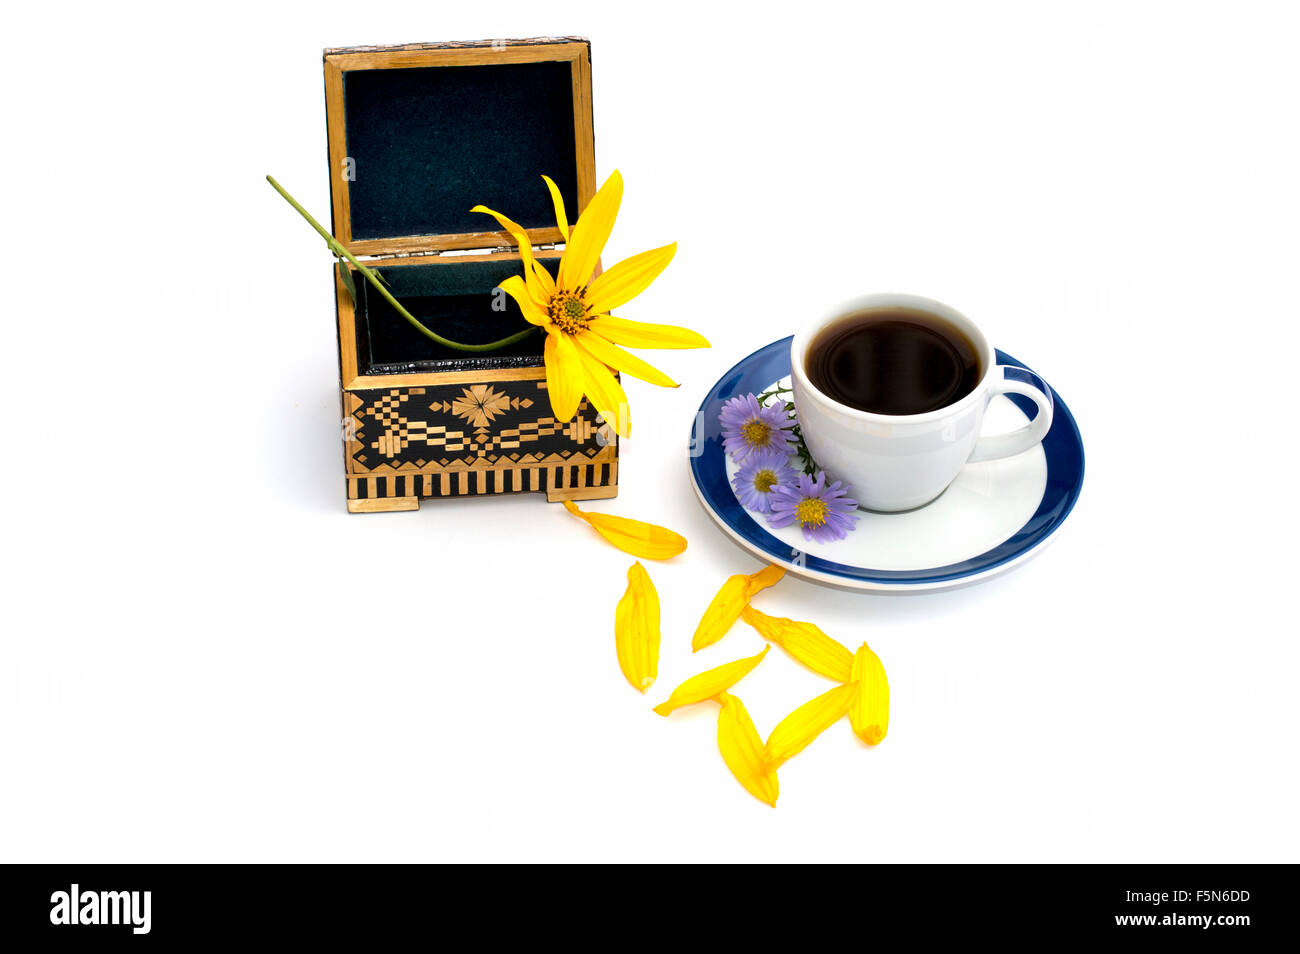 Le cercueil ouvert et tasse de café décoré d'une nature morte de fleurs, d'isoler Banque D'Images